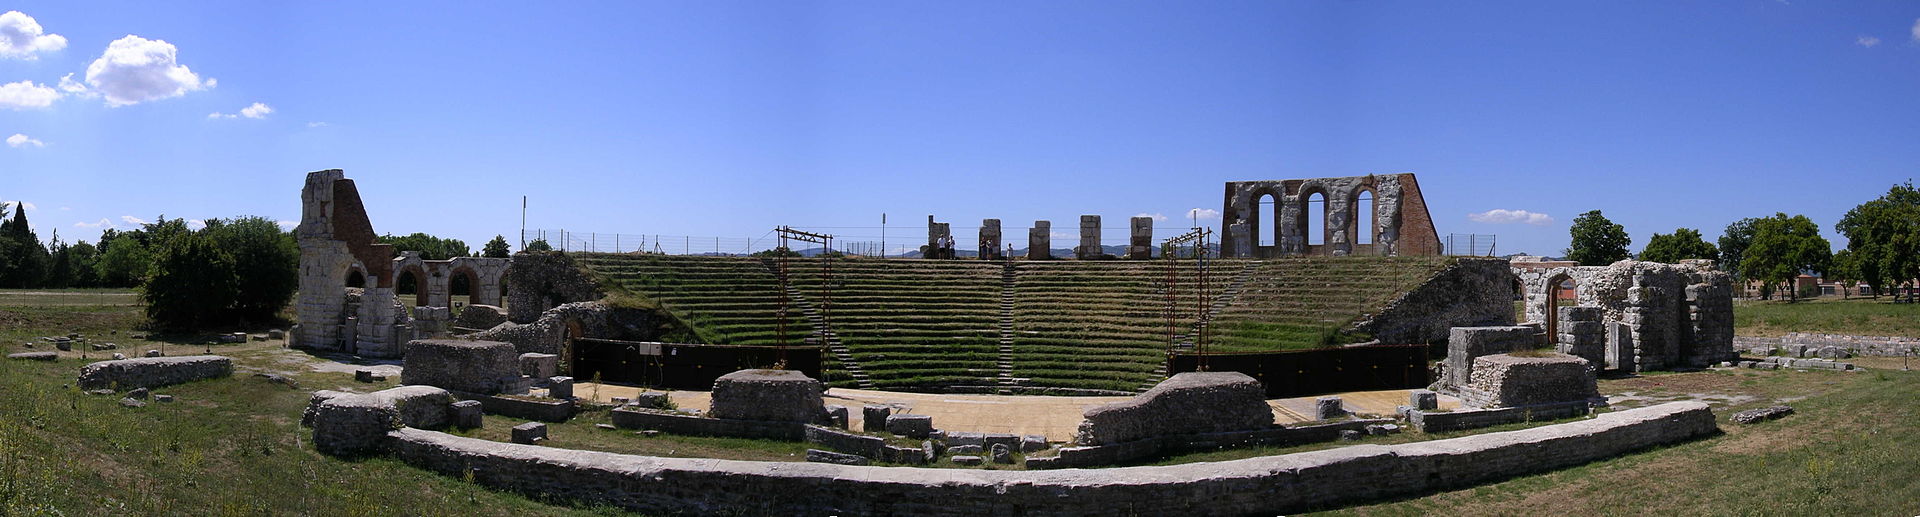 Teatro Romano di Gubbio